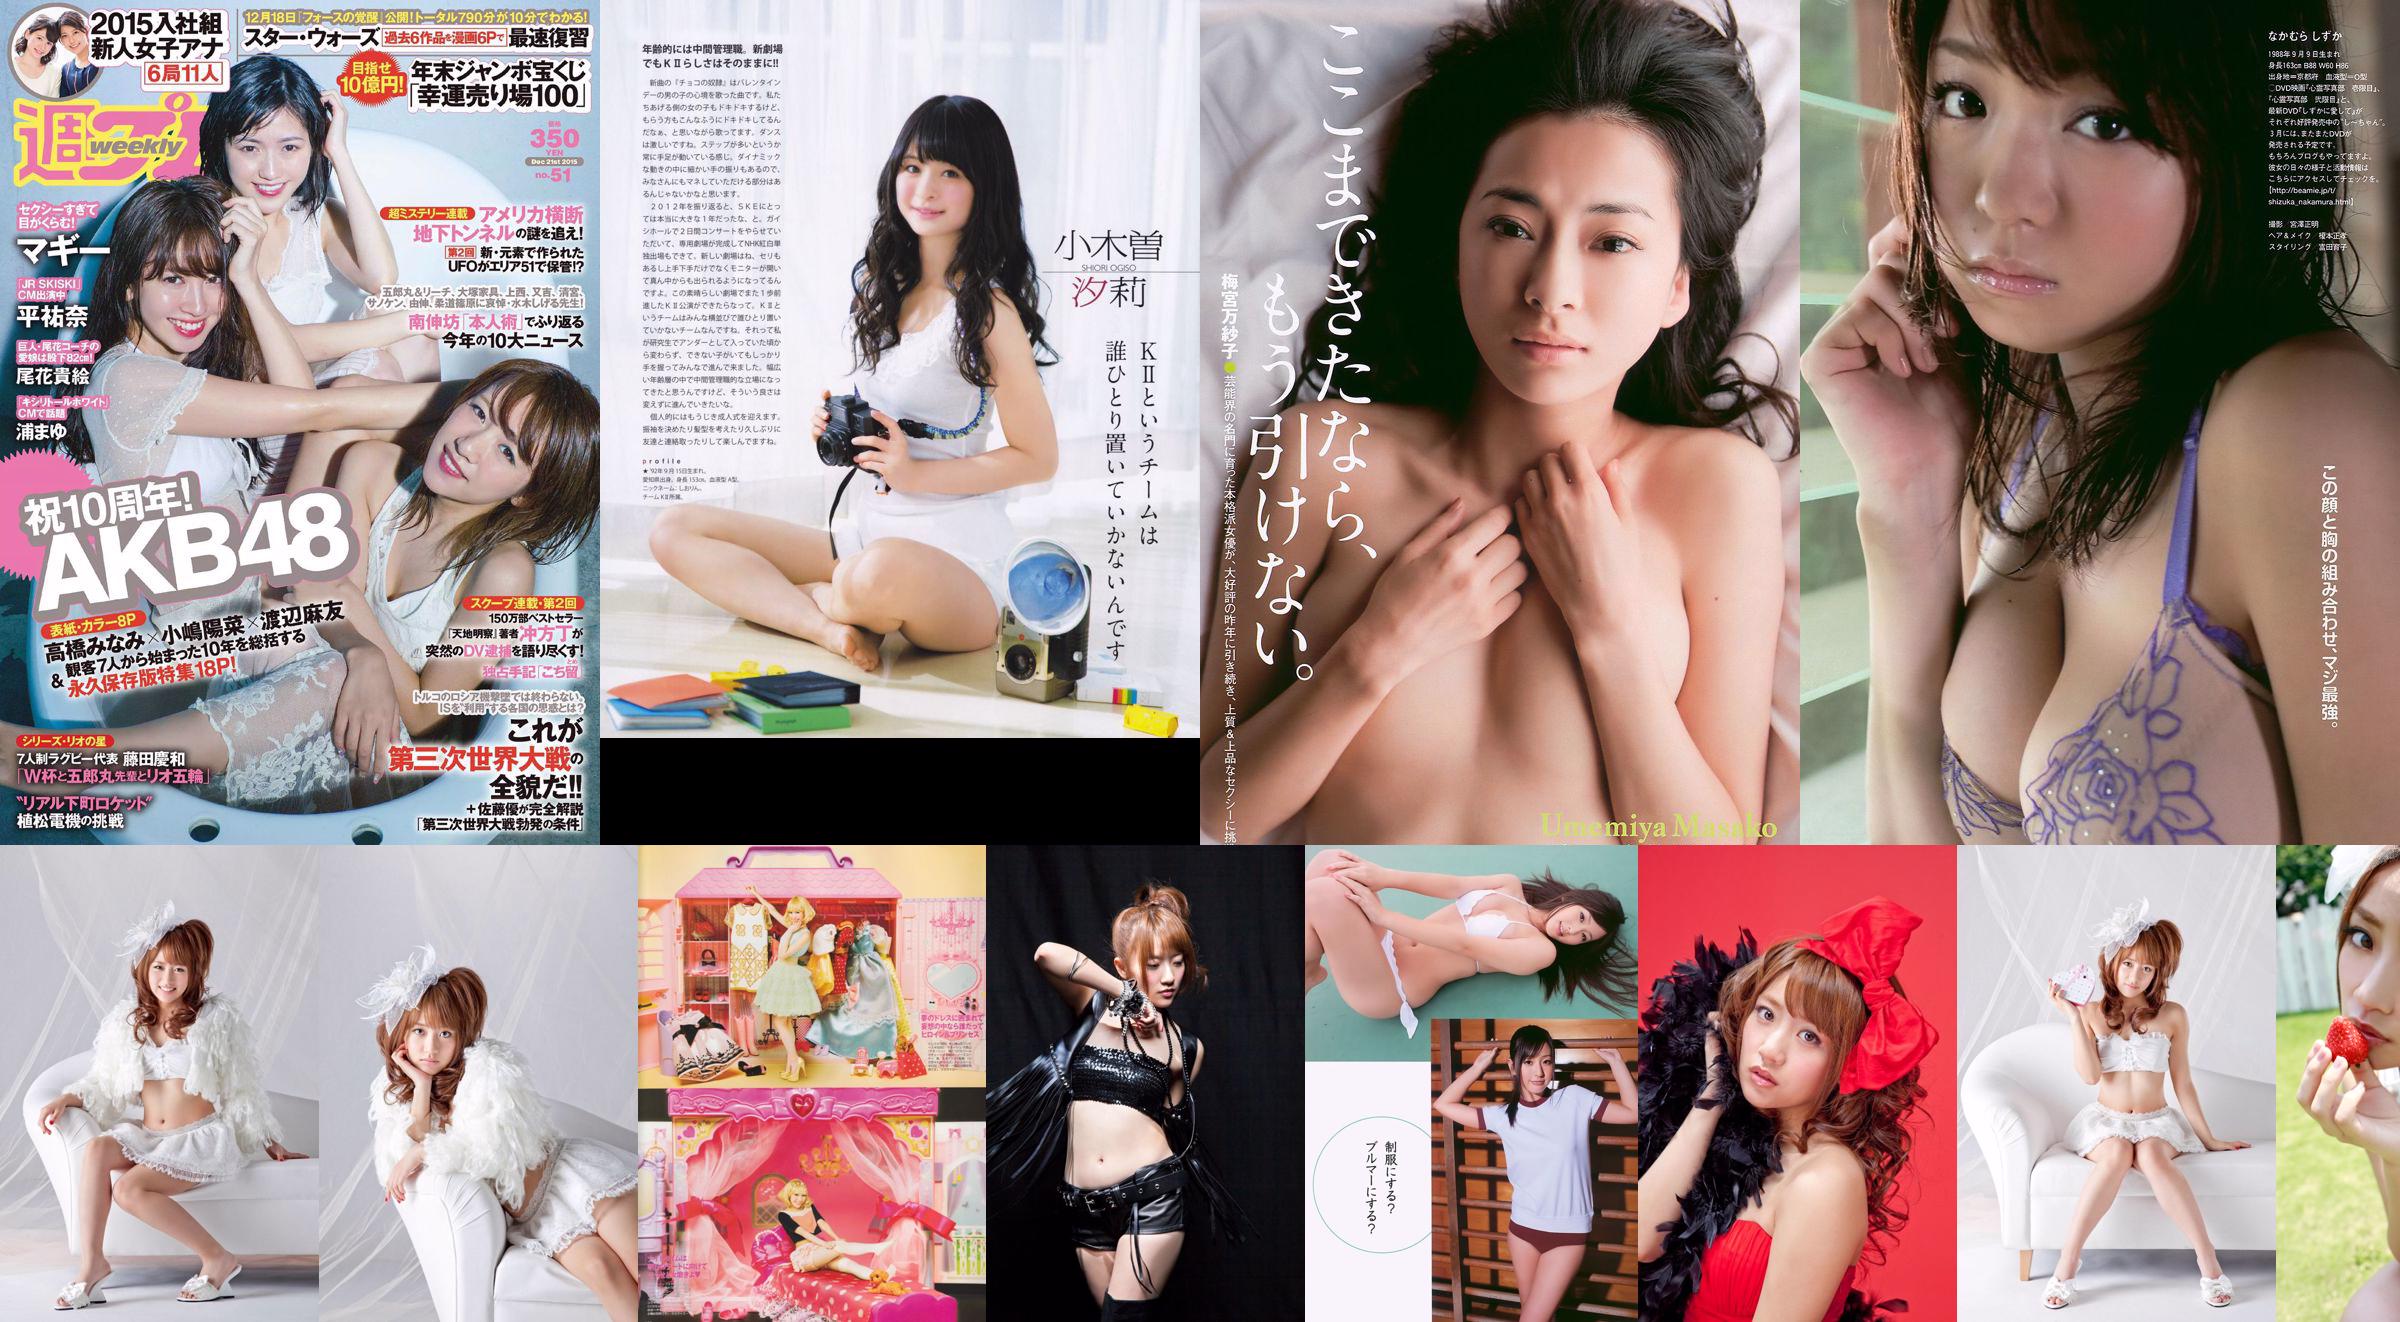 Minami Takahashi Haruna Kojima Mayu Watanabe Maggie Takae Obana Yuna Taira Mayu Ura Mitadera En [Wöchentlicher Playboy] 2015 Nr. 51 Foto No.86f37f Seite 1